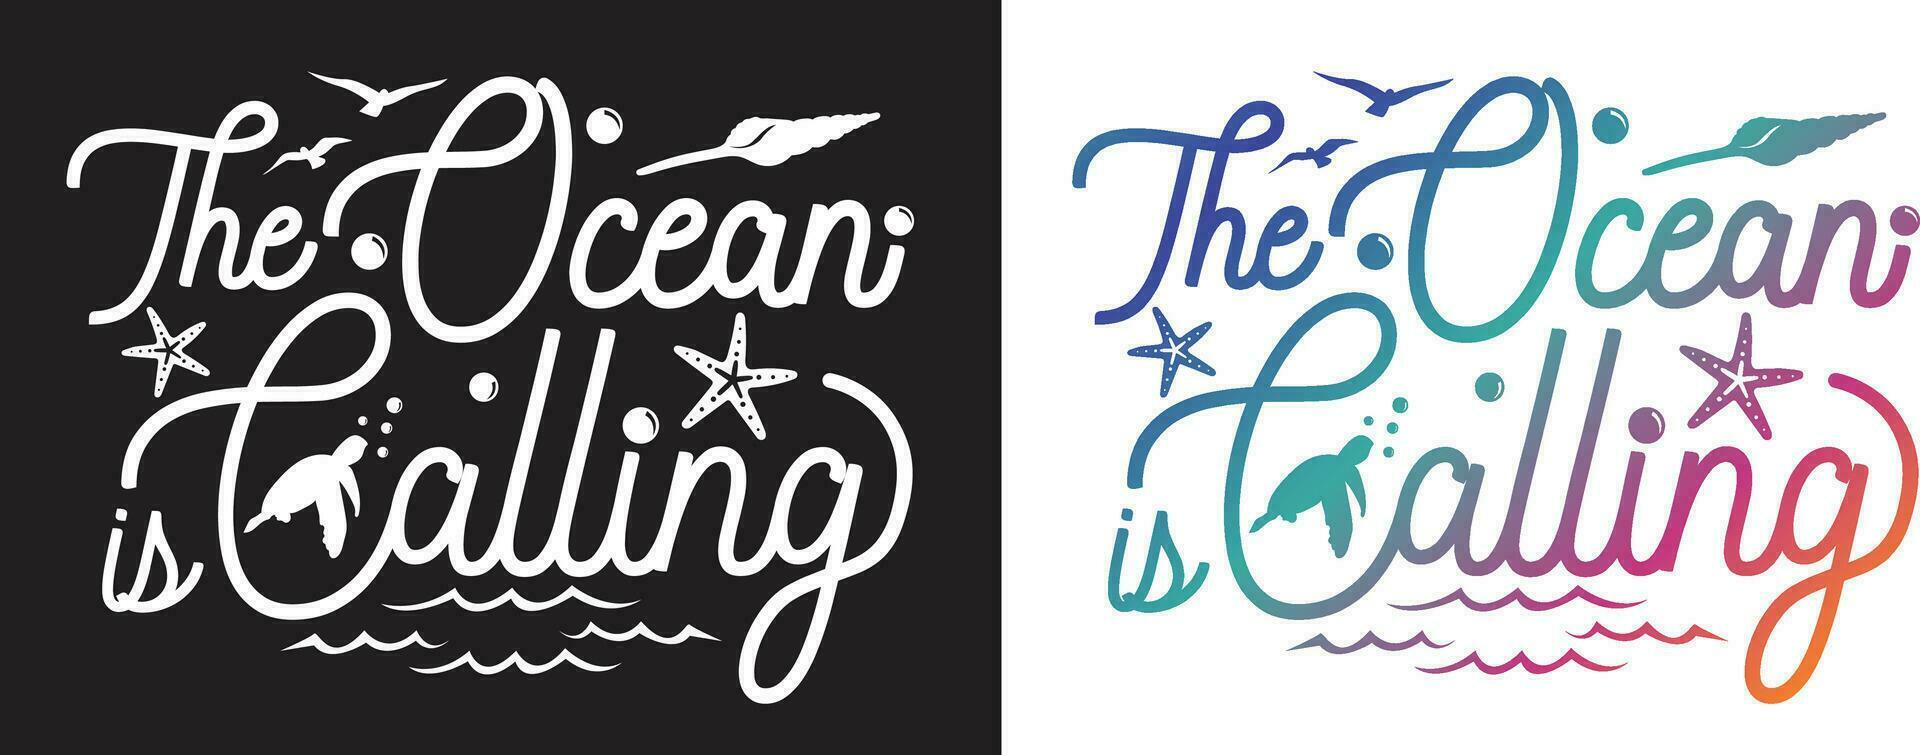 das Ozean ist Berufung. umgeben durch Meer Tiere, Wellen, und Blasen. Typografie Beschriftung Design. vektor